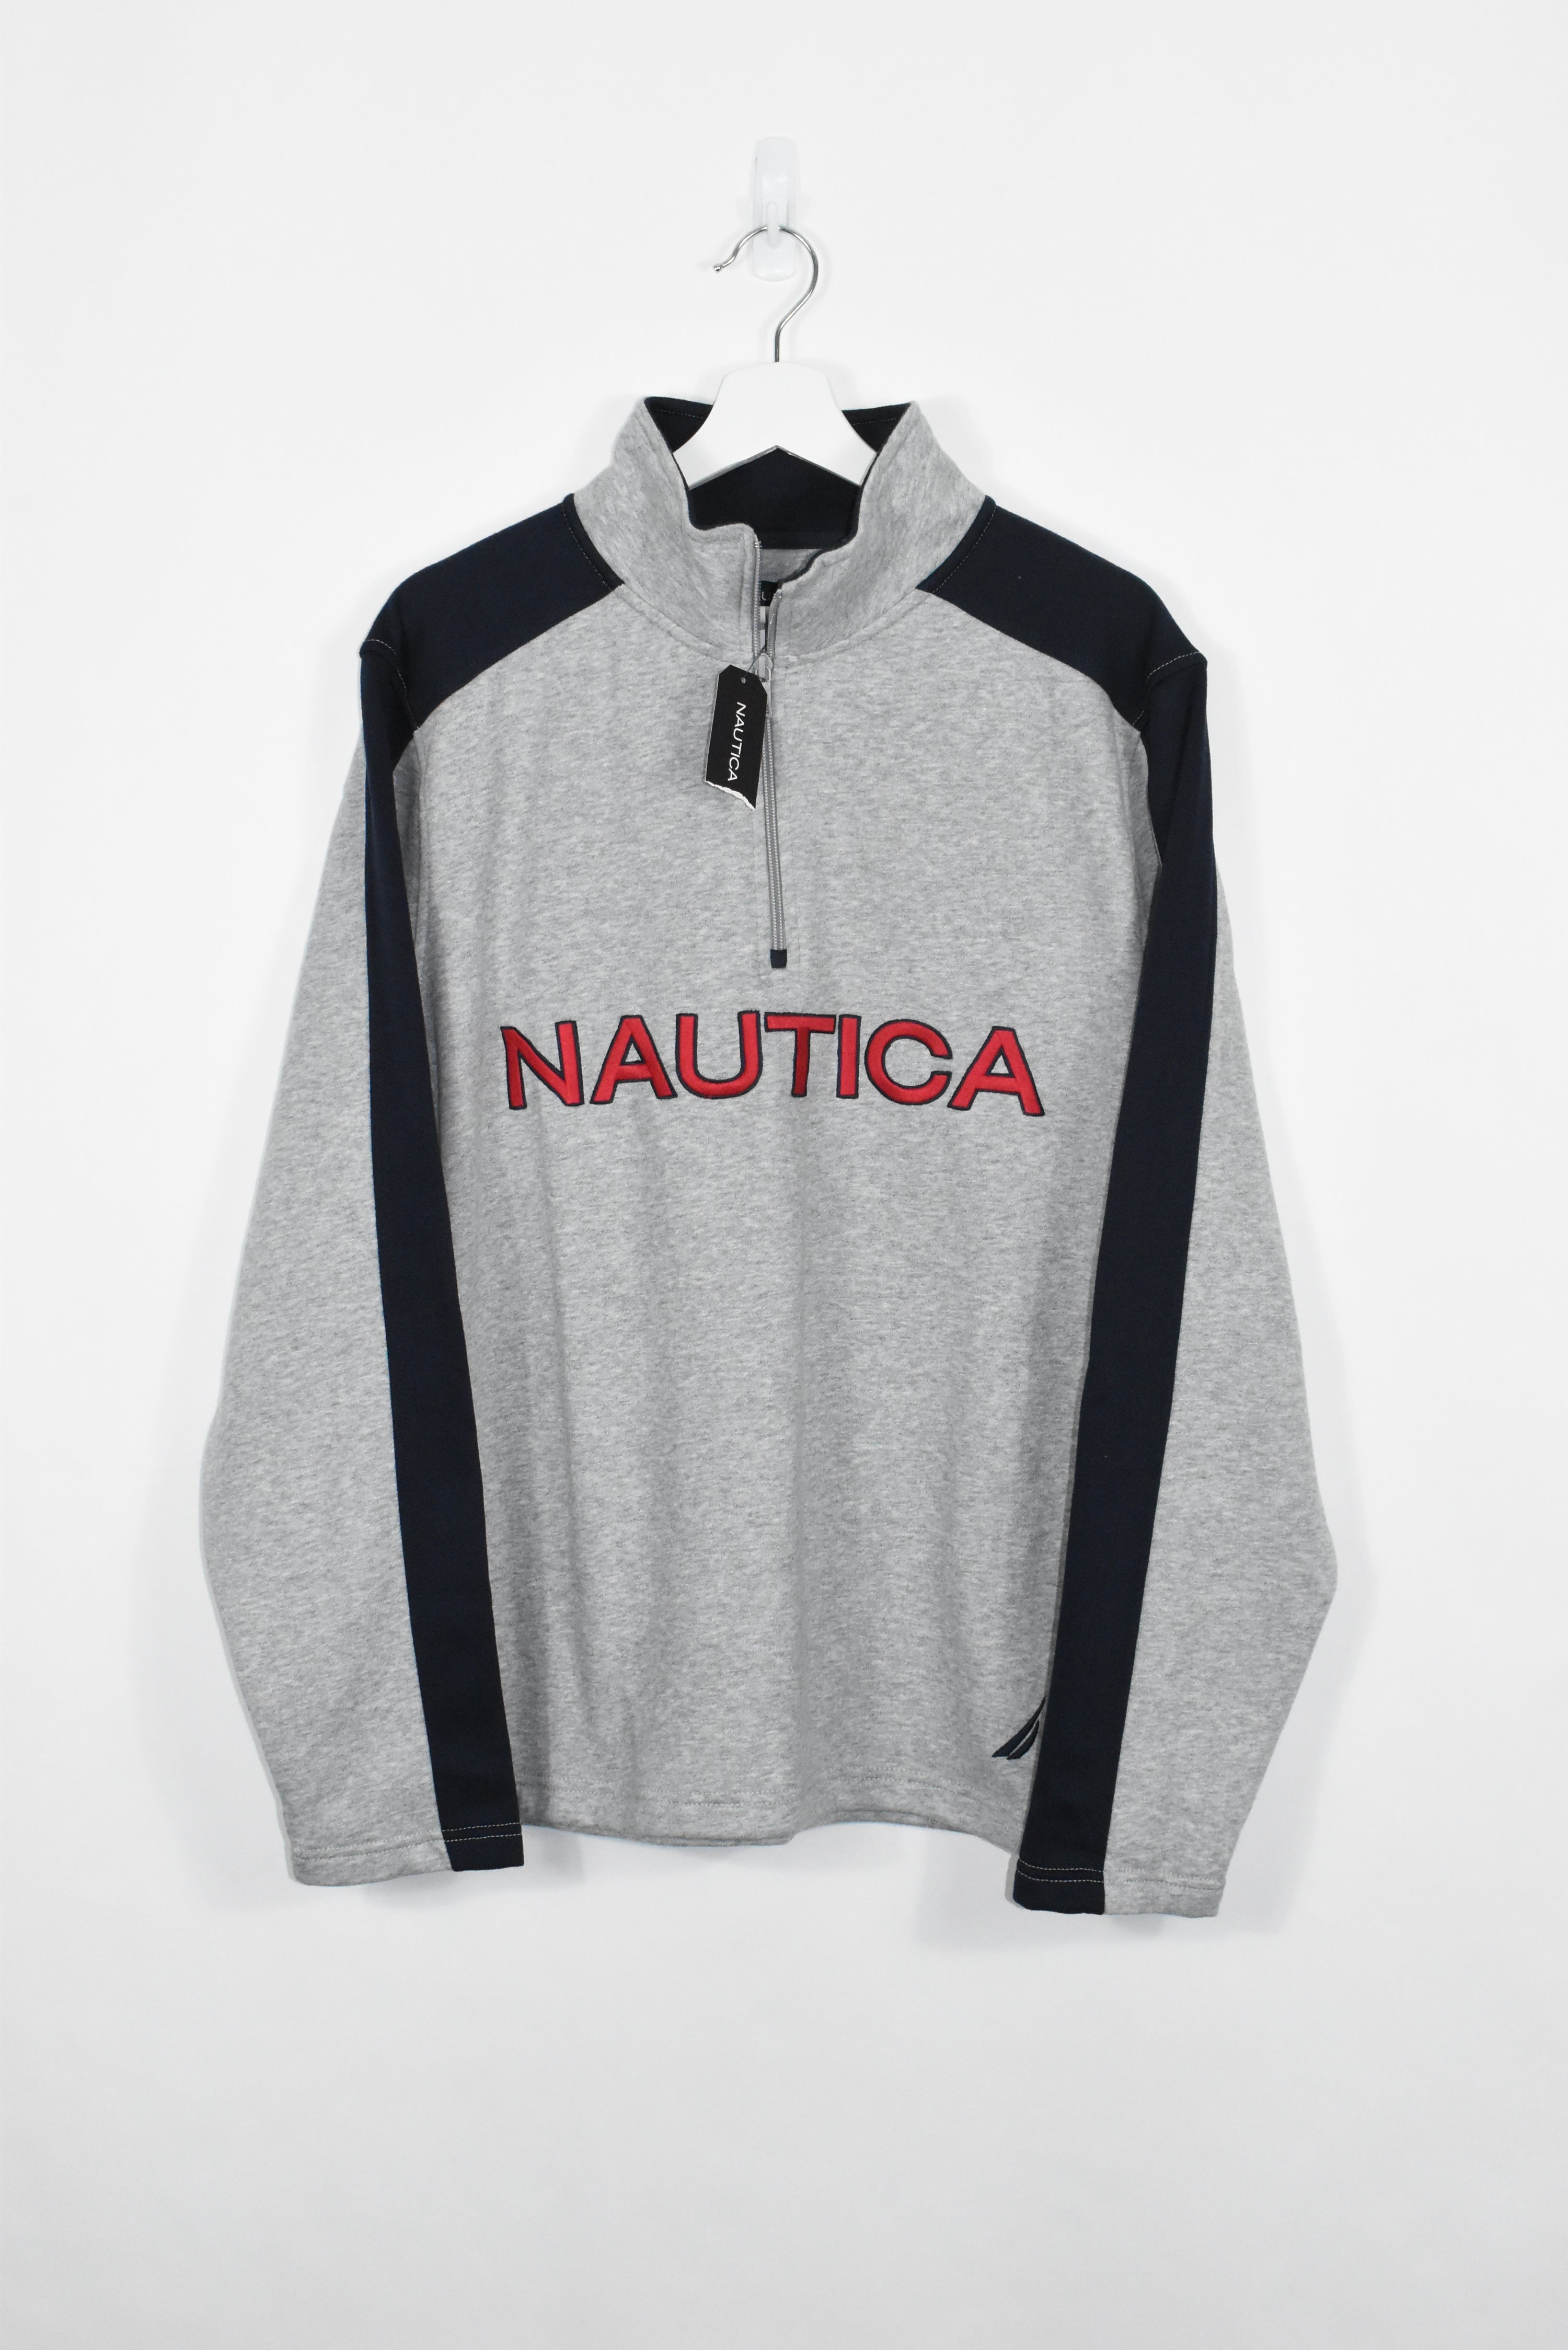 Vintage Nautica Embroidered 1/4 Zip Sweatshirt Large (Baggy)